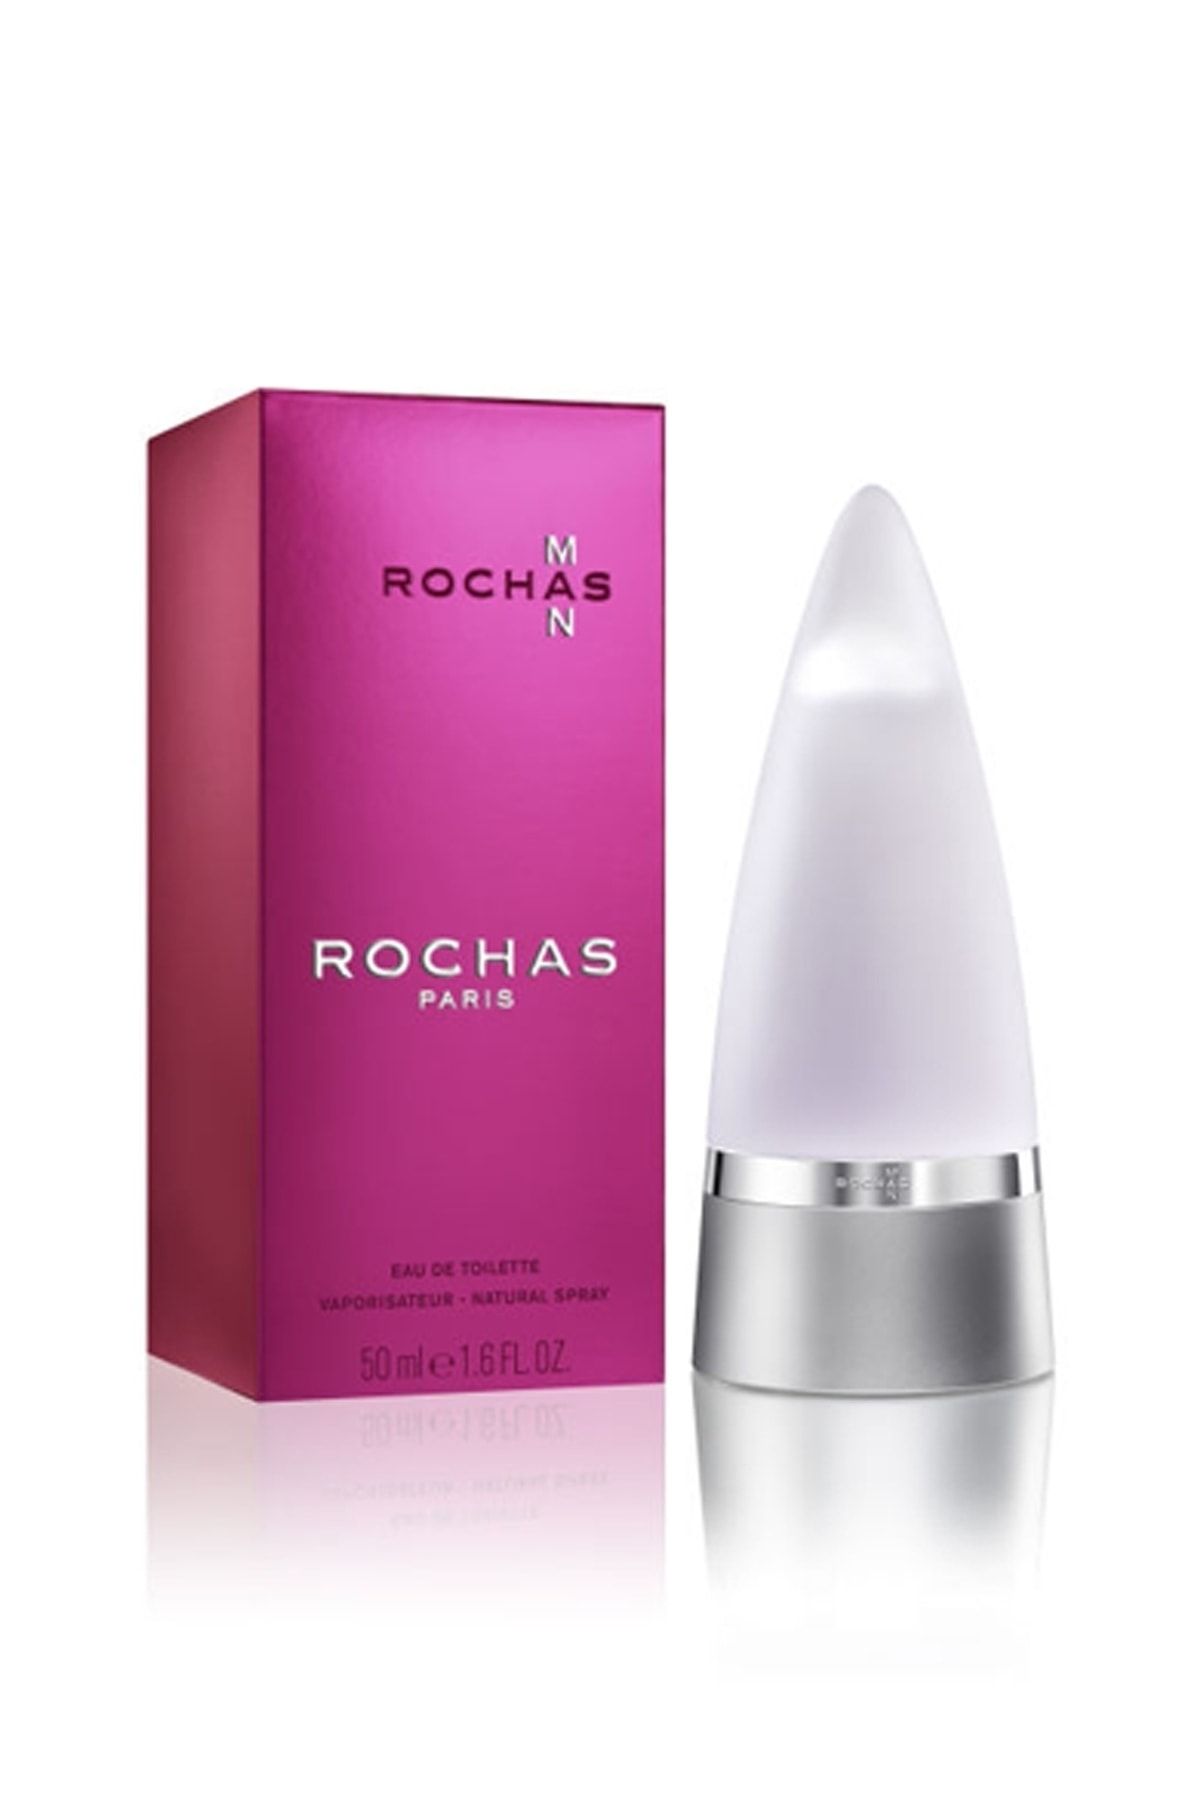 Rochas Men Edt Natural Spray 50 Ml Parfüm